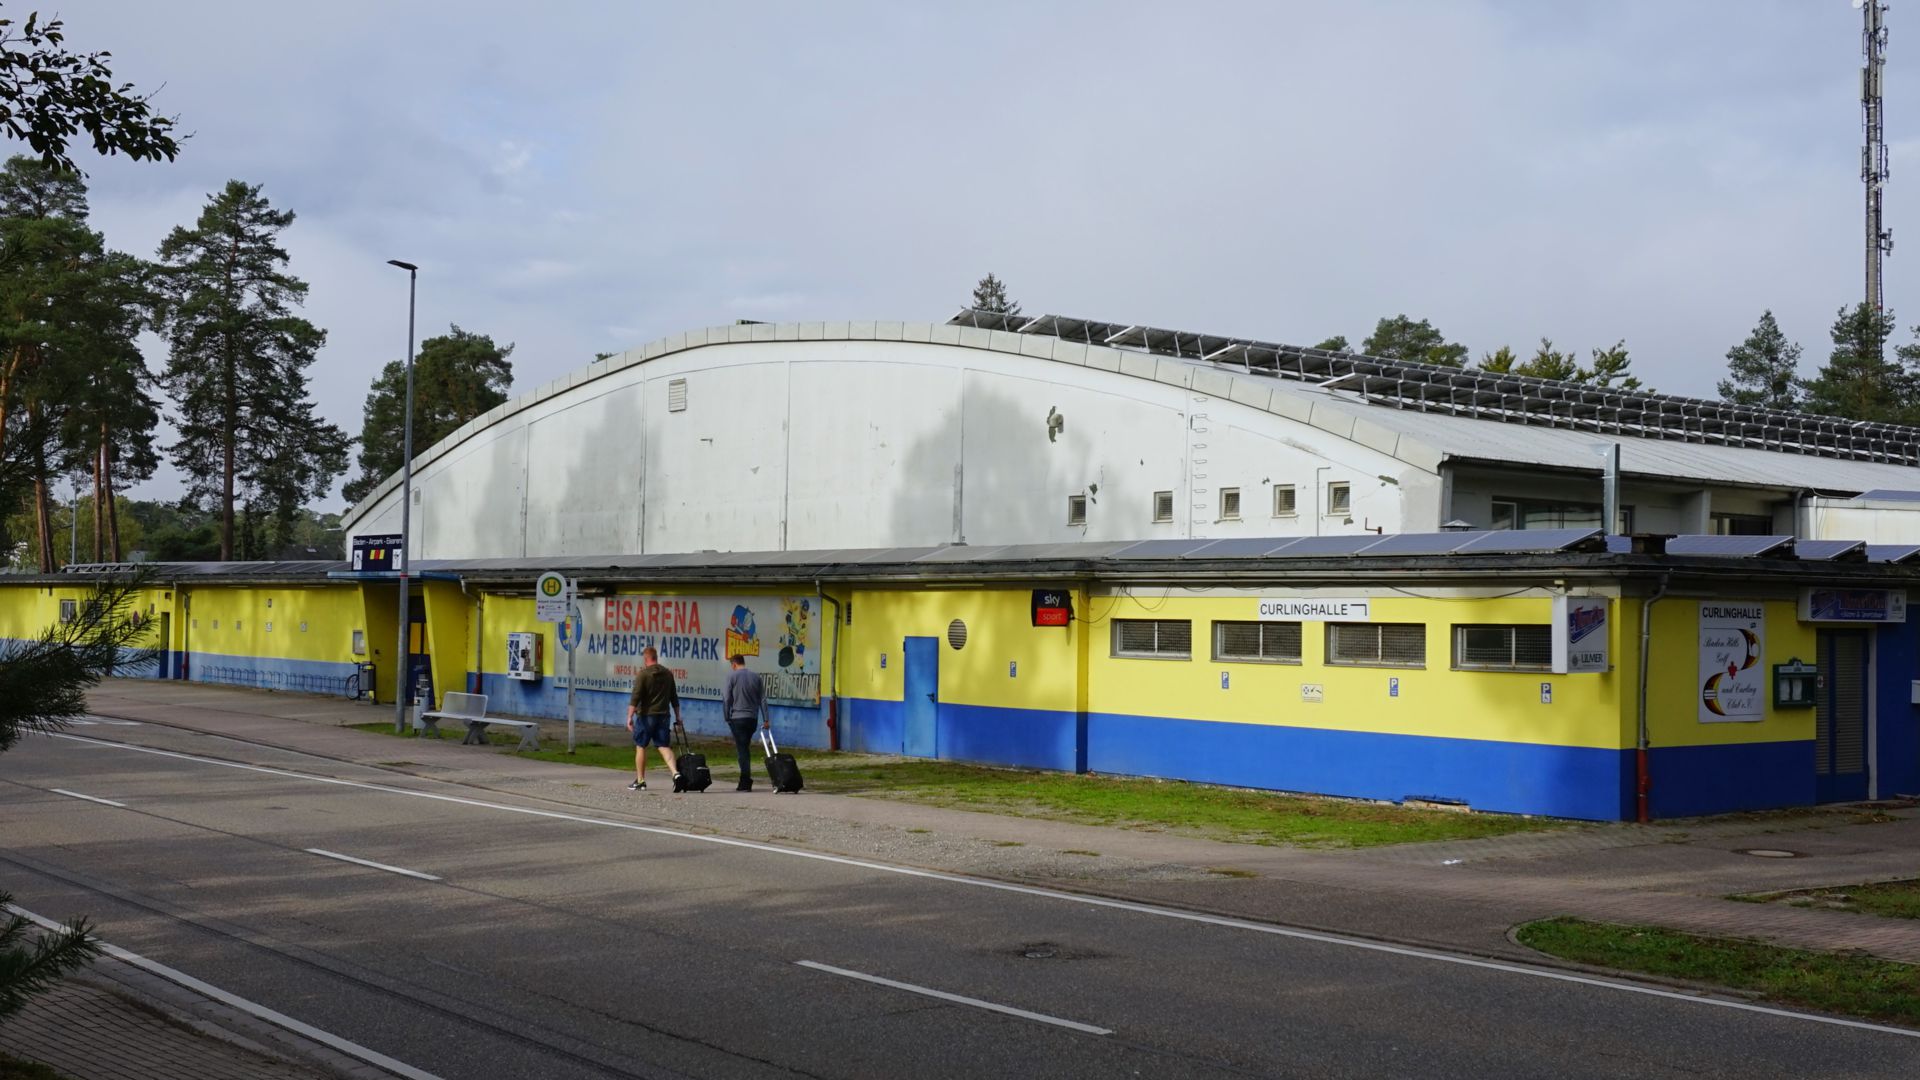 Energie vom Dach: Auf dem Dach der Eishalle in Hügelsheim ist eine Photovoltaik-Anlage angebracht. Die gehört allerdings nicht dem Verein. Dieser verpachtete lediglich die Dachfläche. 